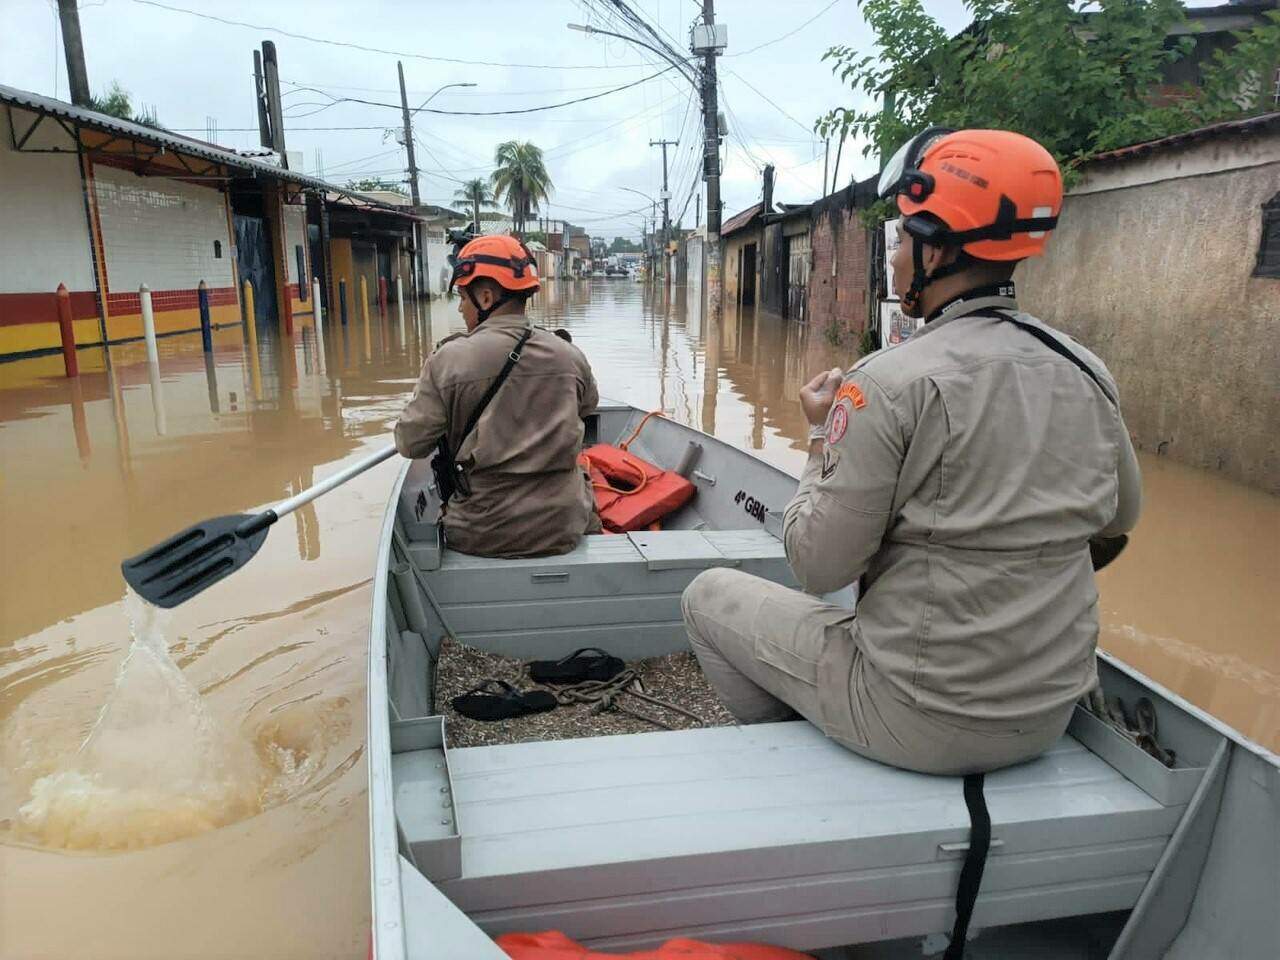 Arquidiocese pede doações para vítimas do temporal no Rio de Janeiro